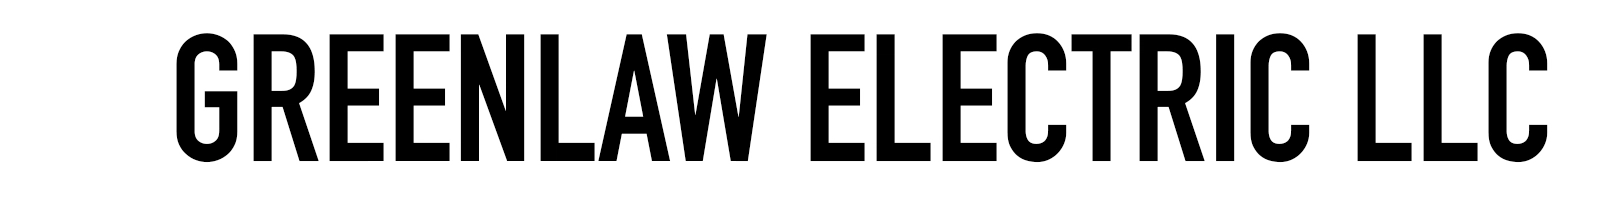 Greenlaw Electric, LLC Logo